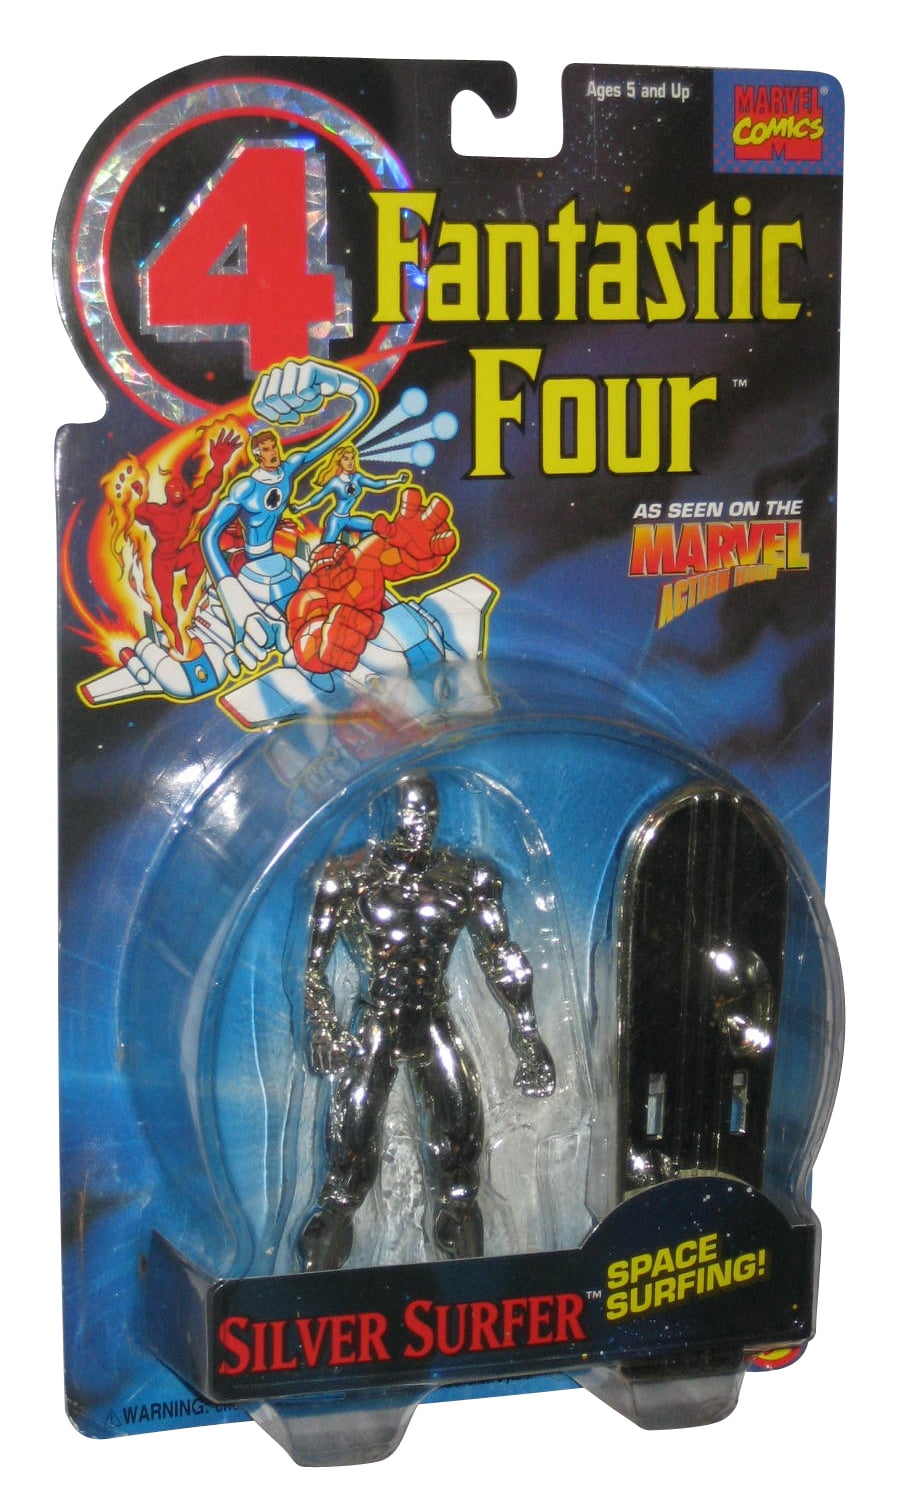 Marvel Comics Fantastic Four Silver Surfer (1995) Toy Biz Action Figure